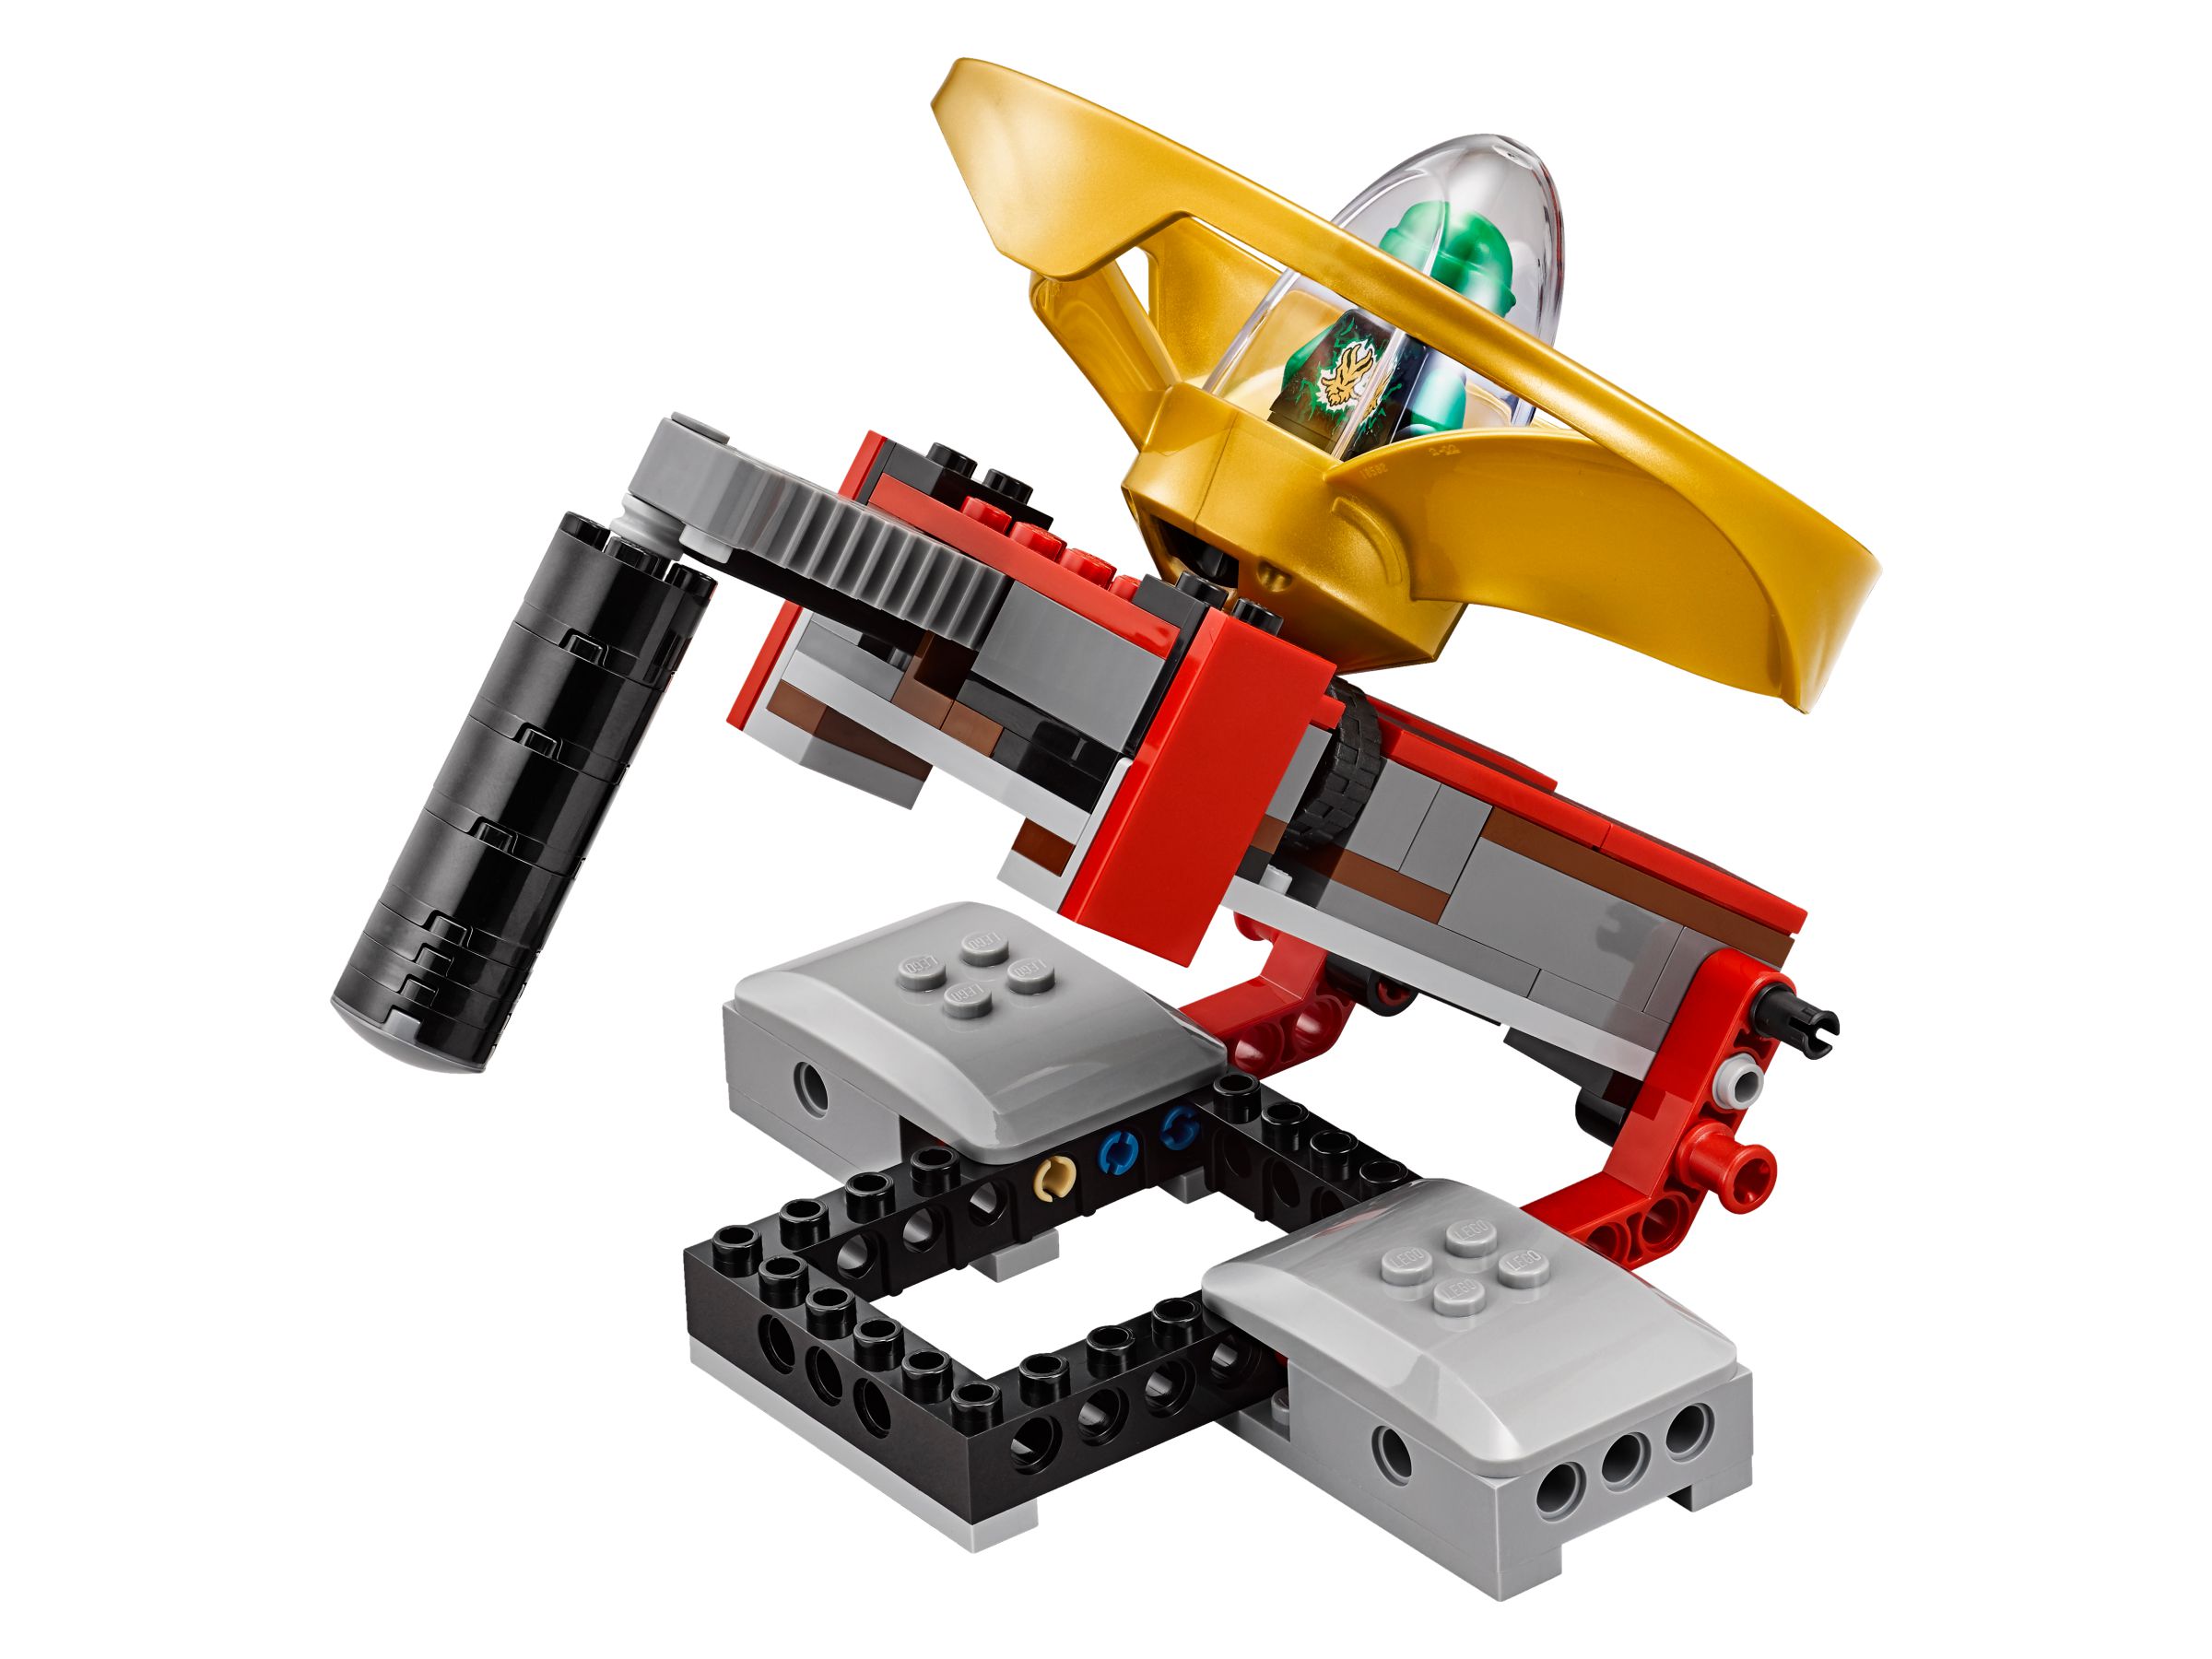 LEGO Ninjago 70590 Airjitzu Turnierarena LEGO_70590_alt6.jpg